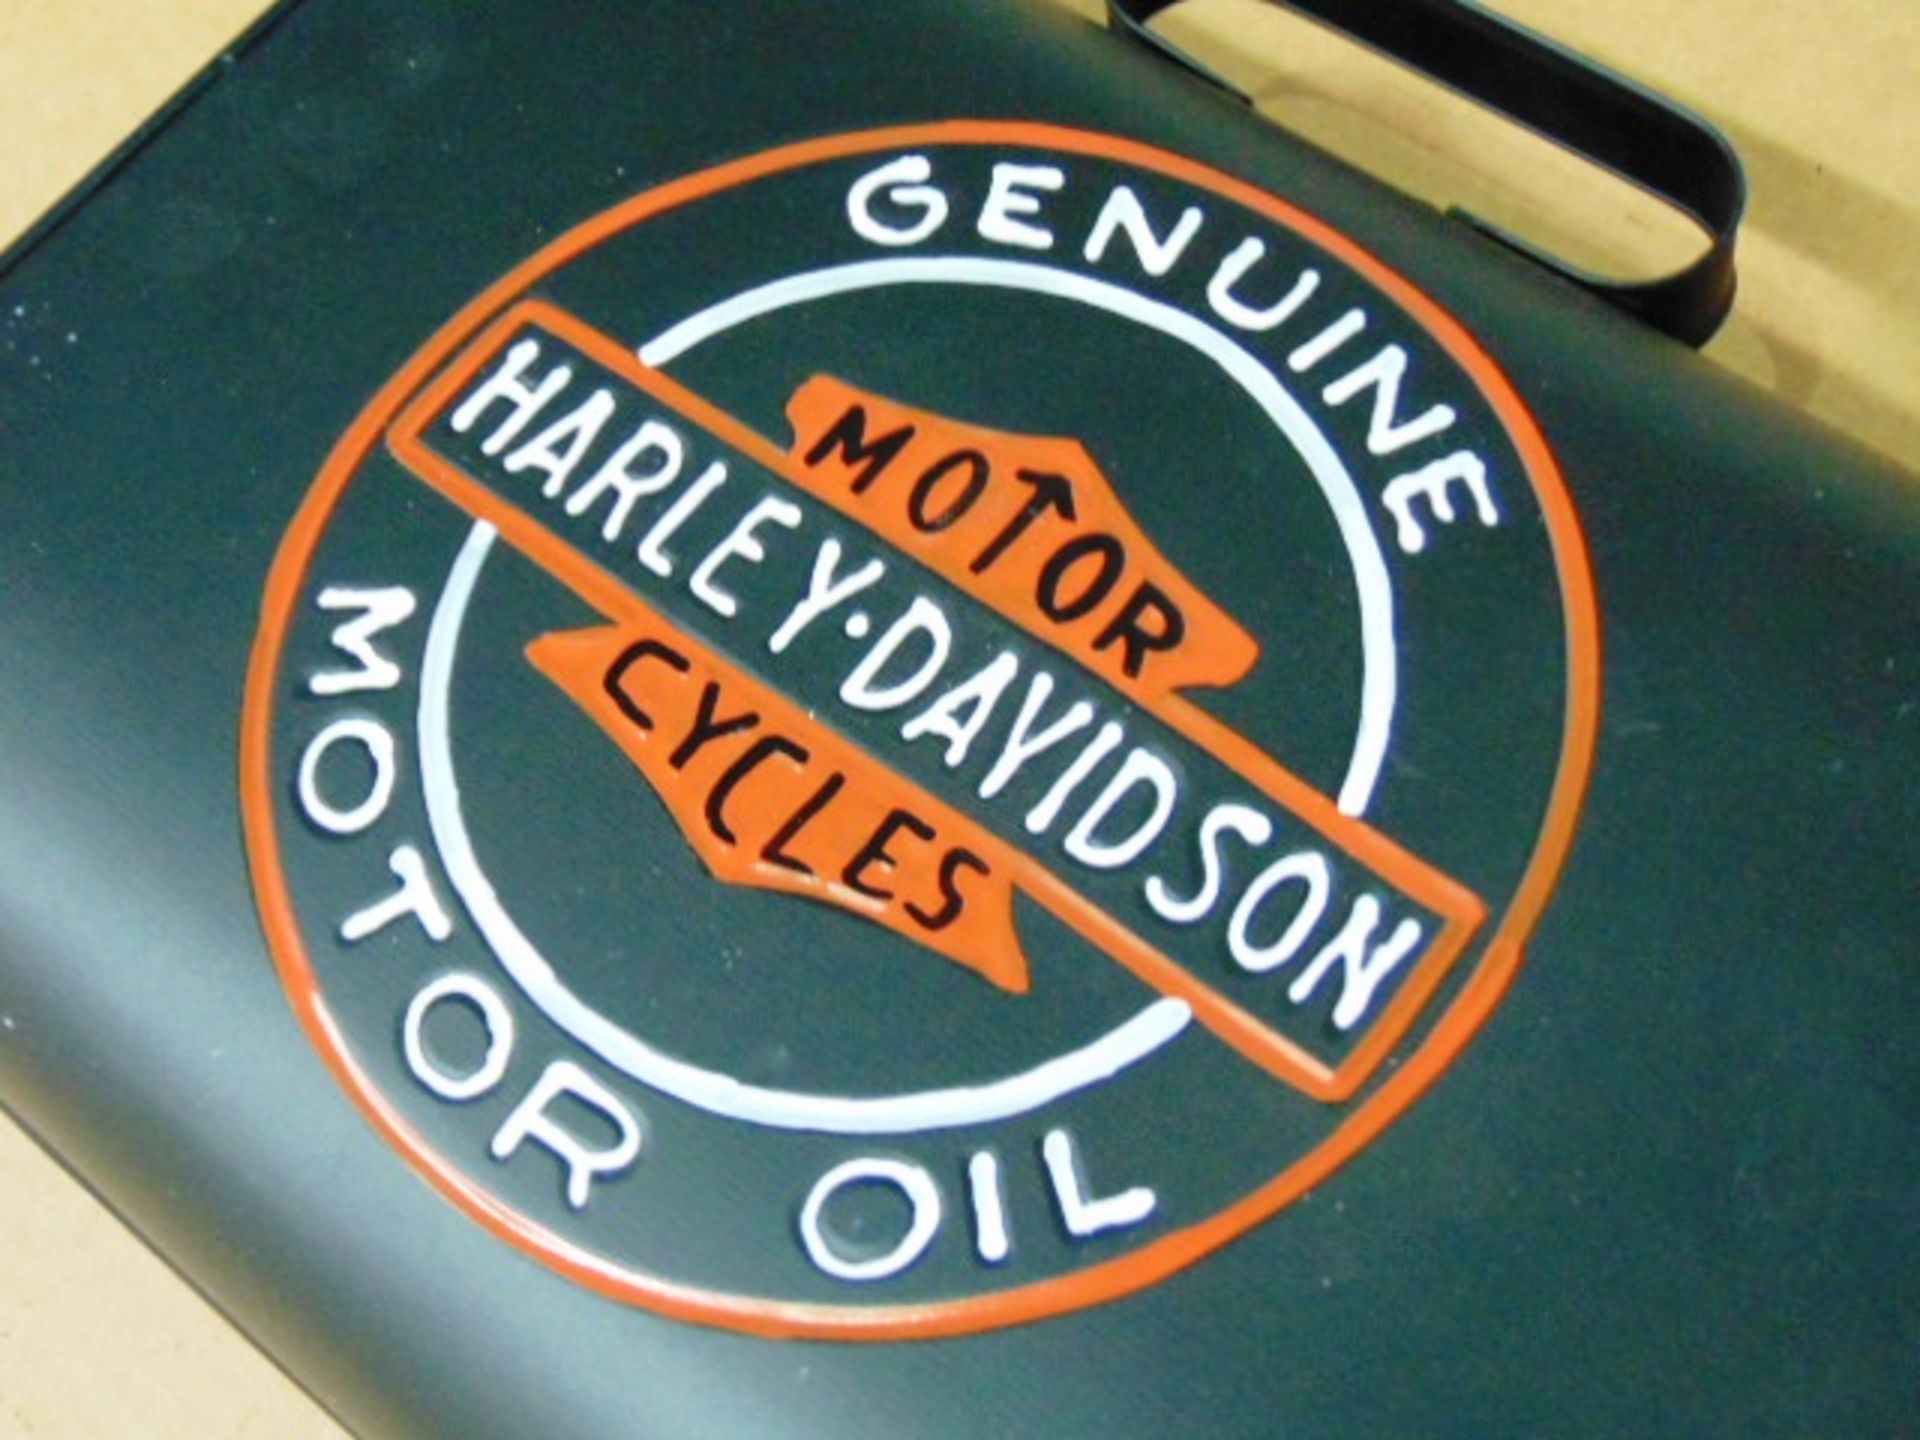 Harley Davidson Branded Slimline Oil Can - Image 2 of 6